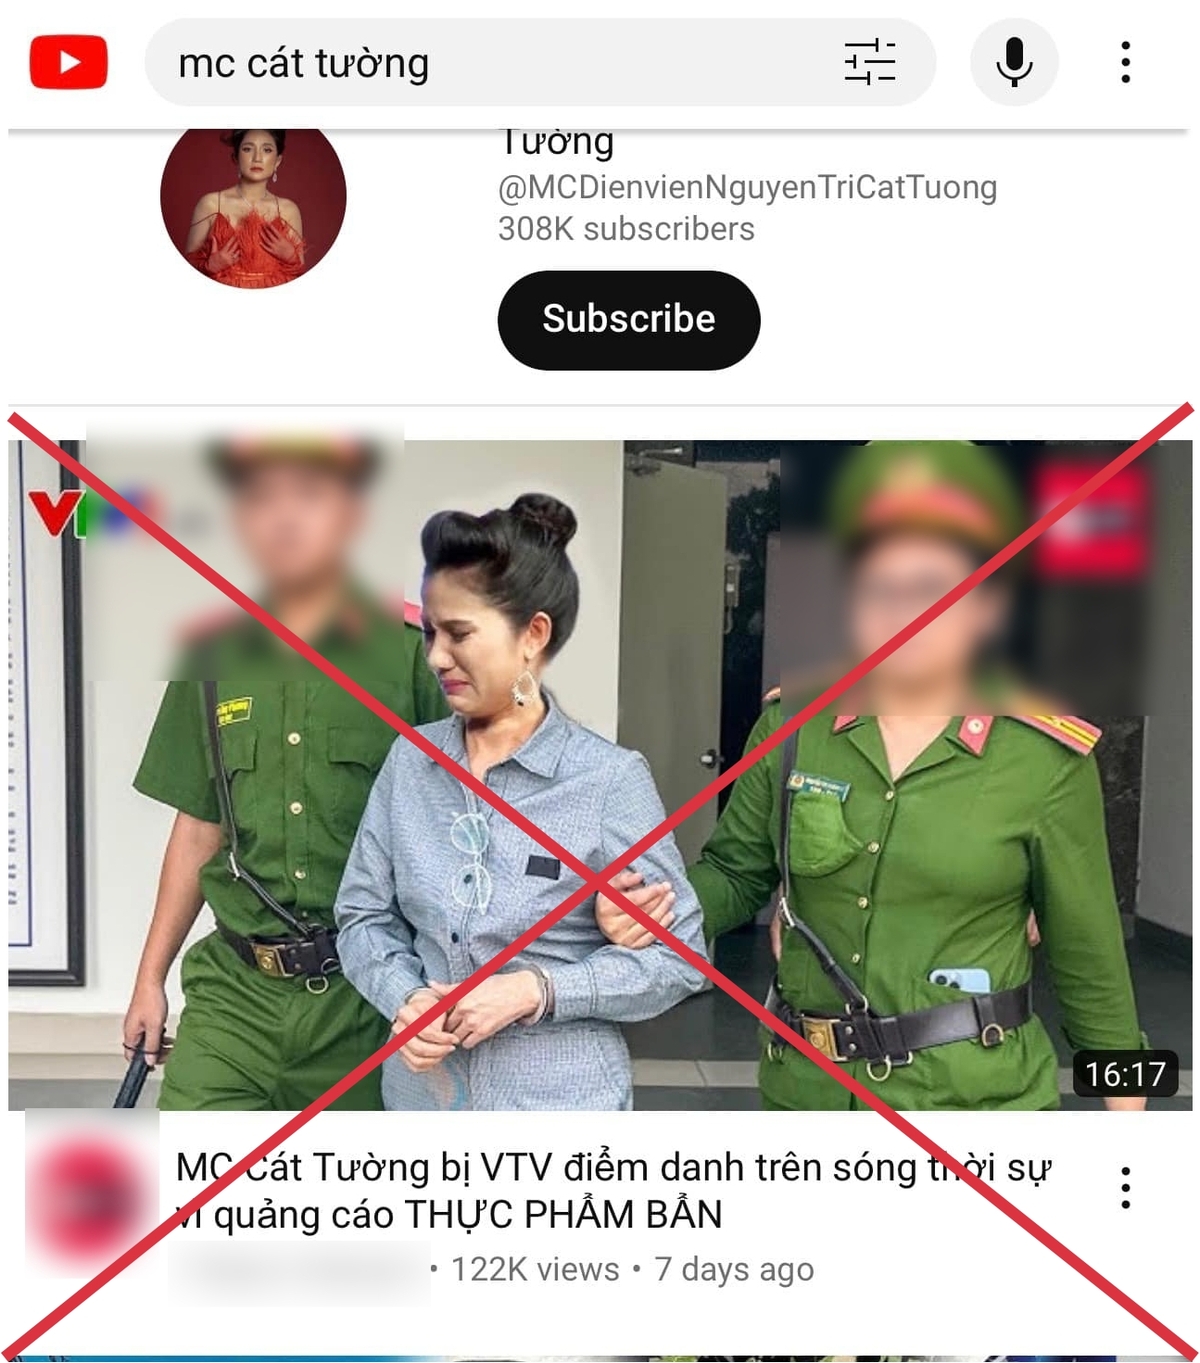 Đoạn video cắt ghép hình ảnh nghệ sĩ Cát Tường bị bắt với tiêu đề gây chú ý đang nhận được sự quan tâm của người xem khiến nữ nghệ sĩ phải lên tiếng.